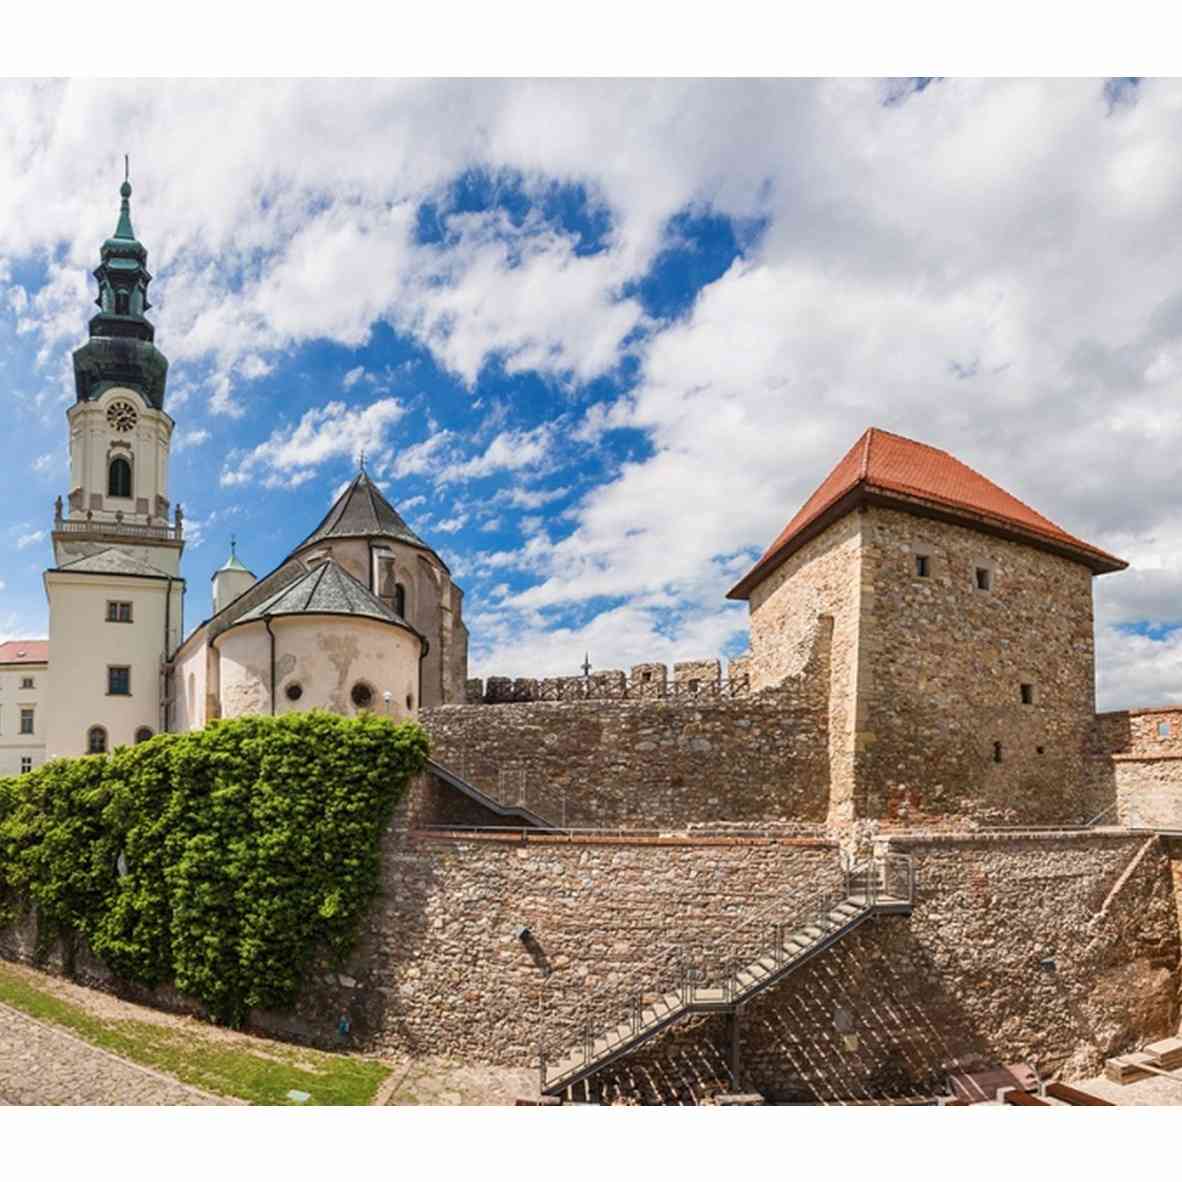 5 Spot Wisata di Nitra, Pesona Kota di Slovakia dengan Kastil Megahnya